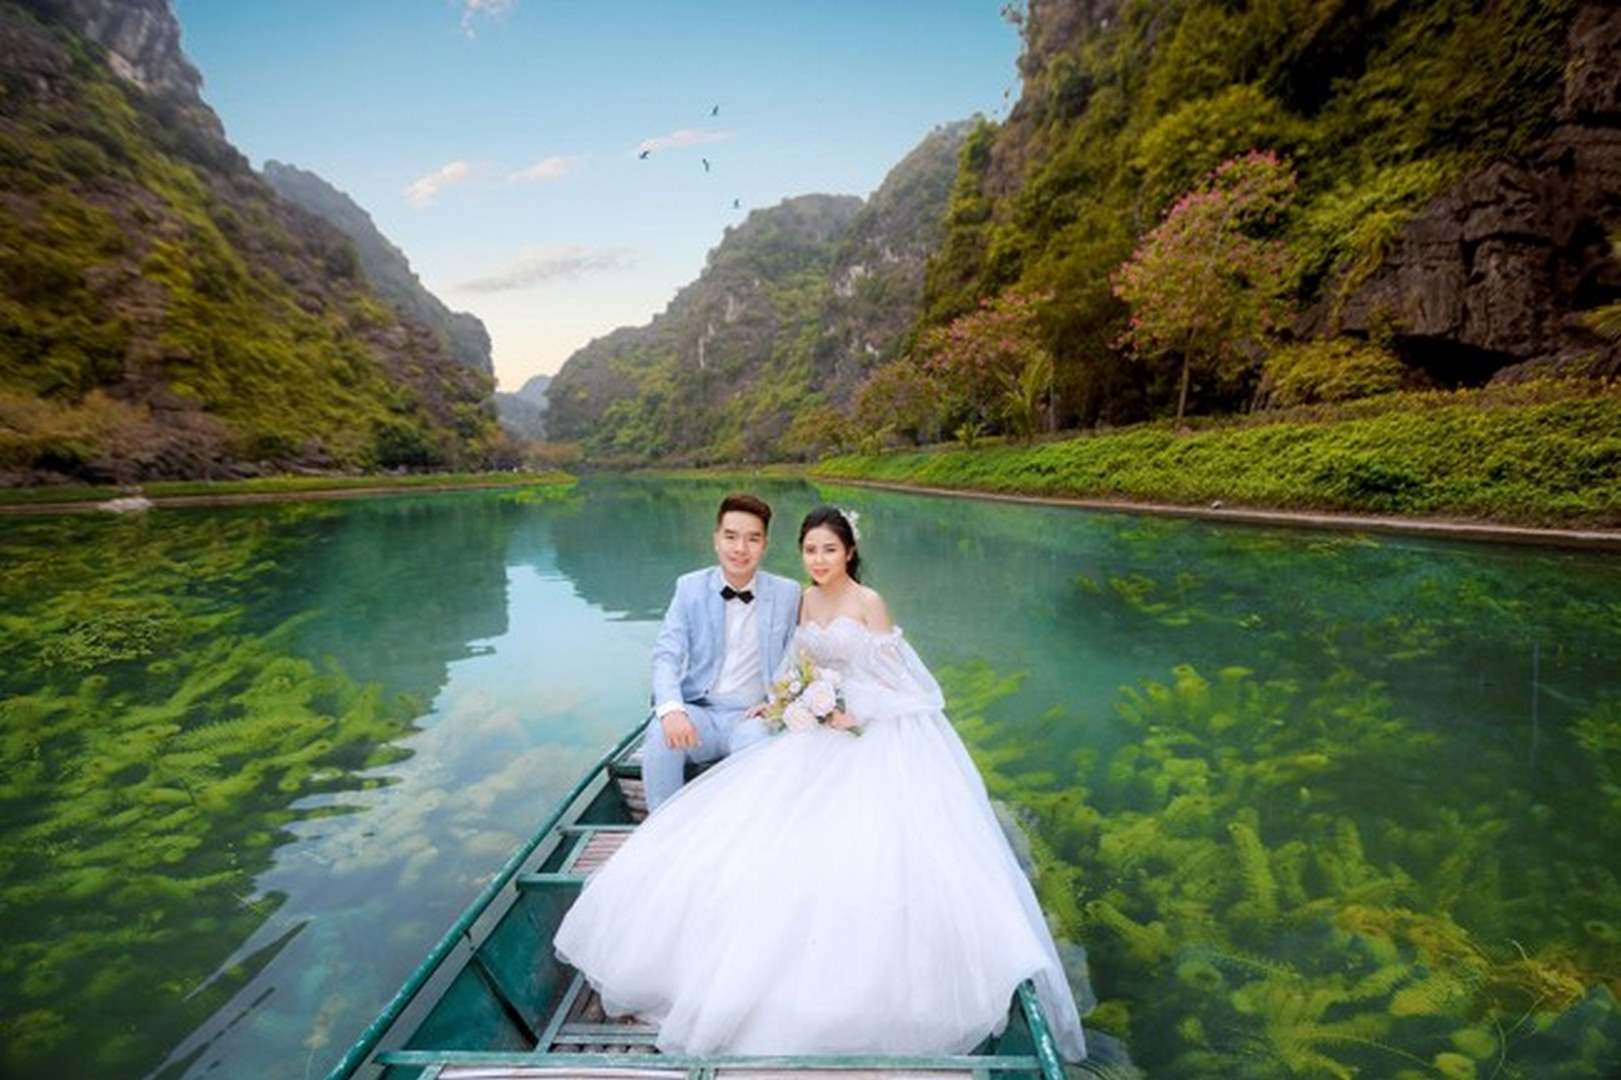 Bạn đang tìm kiếm một địa điểm lãng mạn để chụp ảnh cưới ở Ninh Bình? Hãy xem những bức ảnh đẹp nhất của chúng tôi! Chúng tôi đã đưa ra những gợi ý tốt nhất để giúp bạn lựa chọn địa điểm chụp ảnh cưới đẹp nhất tại Ninh Bình.